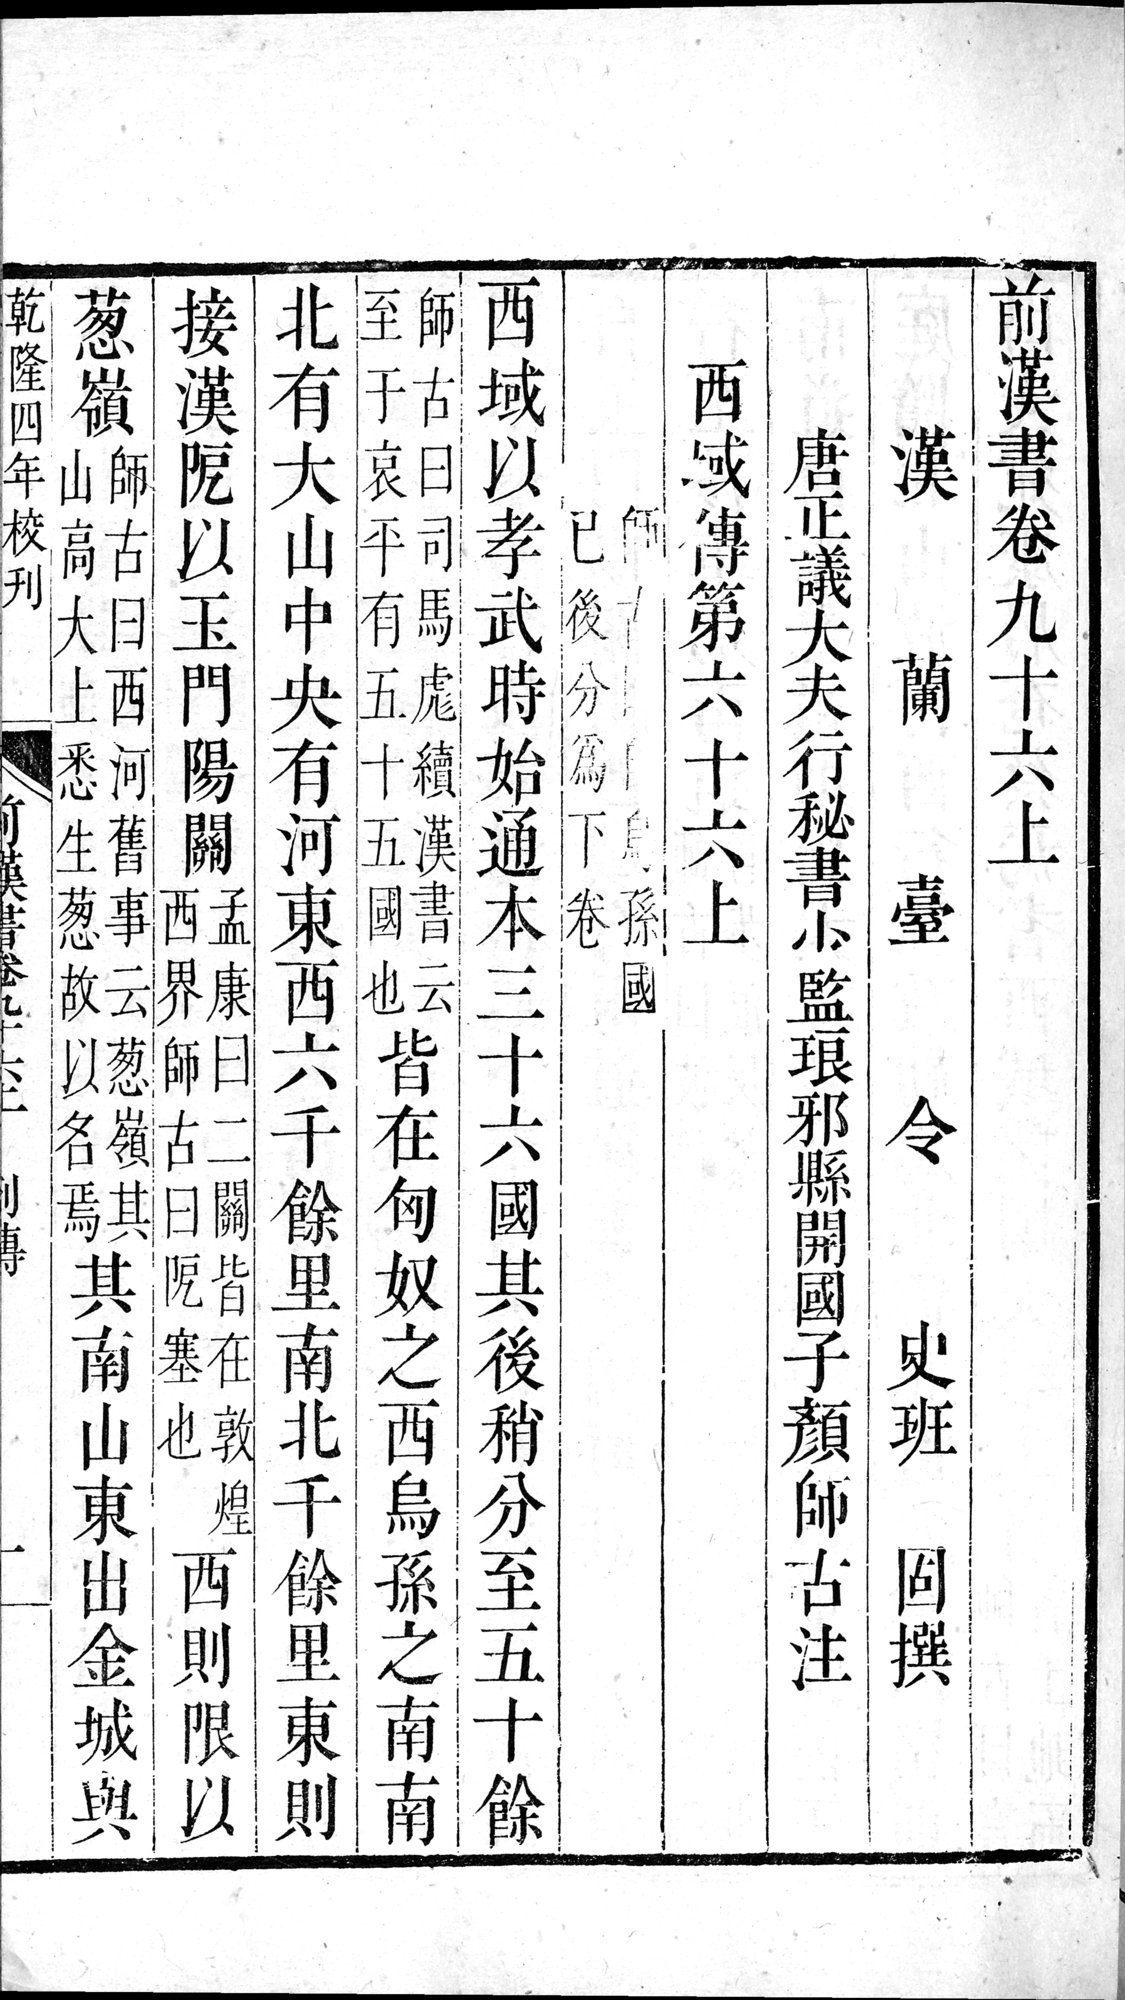 前漢書 : vol.96 top / Page 1 (Grayscale High Resolution Image)